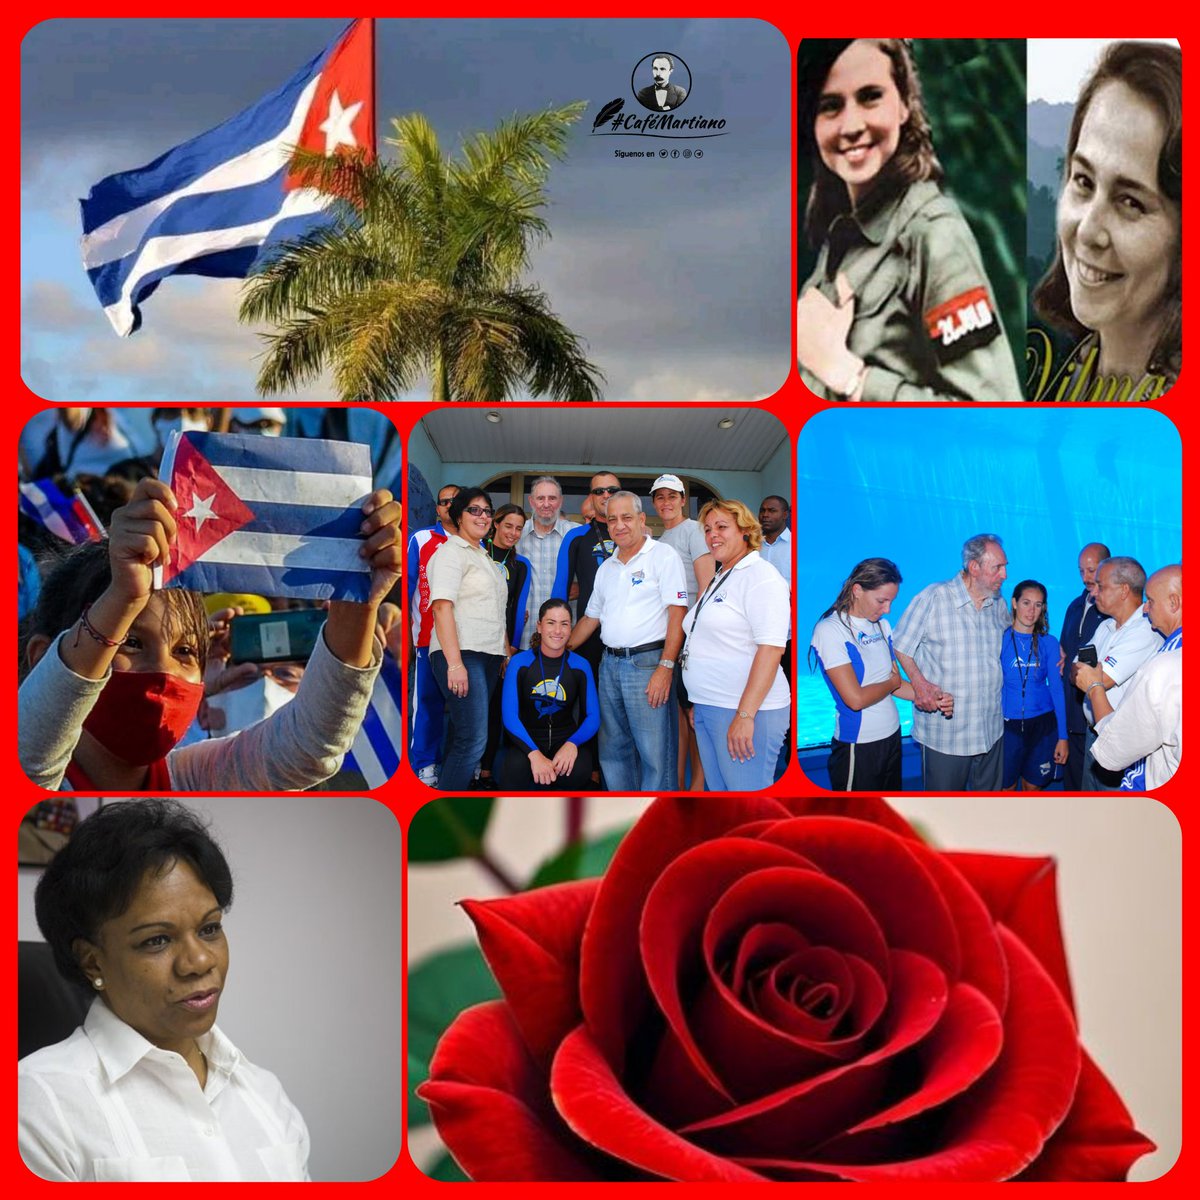 @cafemartiano @DiazCanelB @DrRobertoMOjeda @InesMChapman @TeresaBoue @EVilluendasC @IzquierdaUnid15 @agnes_becerra @mimovilespatria @DeZurdaTeam_ @ValoresTeam1 Buenos días 🇨🇺 #CaféMartiano “... La mujer explica, da la llave de la vida, ayuda, da su sangre con su fé al que ama'. “La Revolución tiene en las mujeres cubanas hoy día un verdadero ejército, una impresionante fuerza política... #MujeresEnRevolución #CubaEsAmor